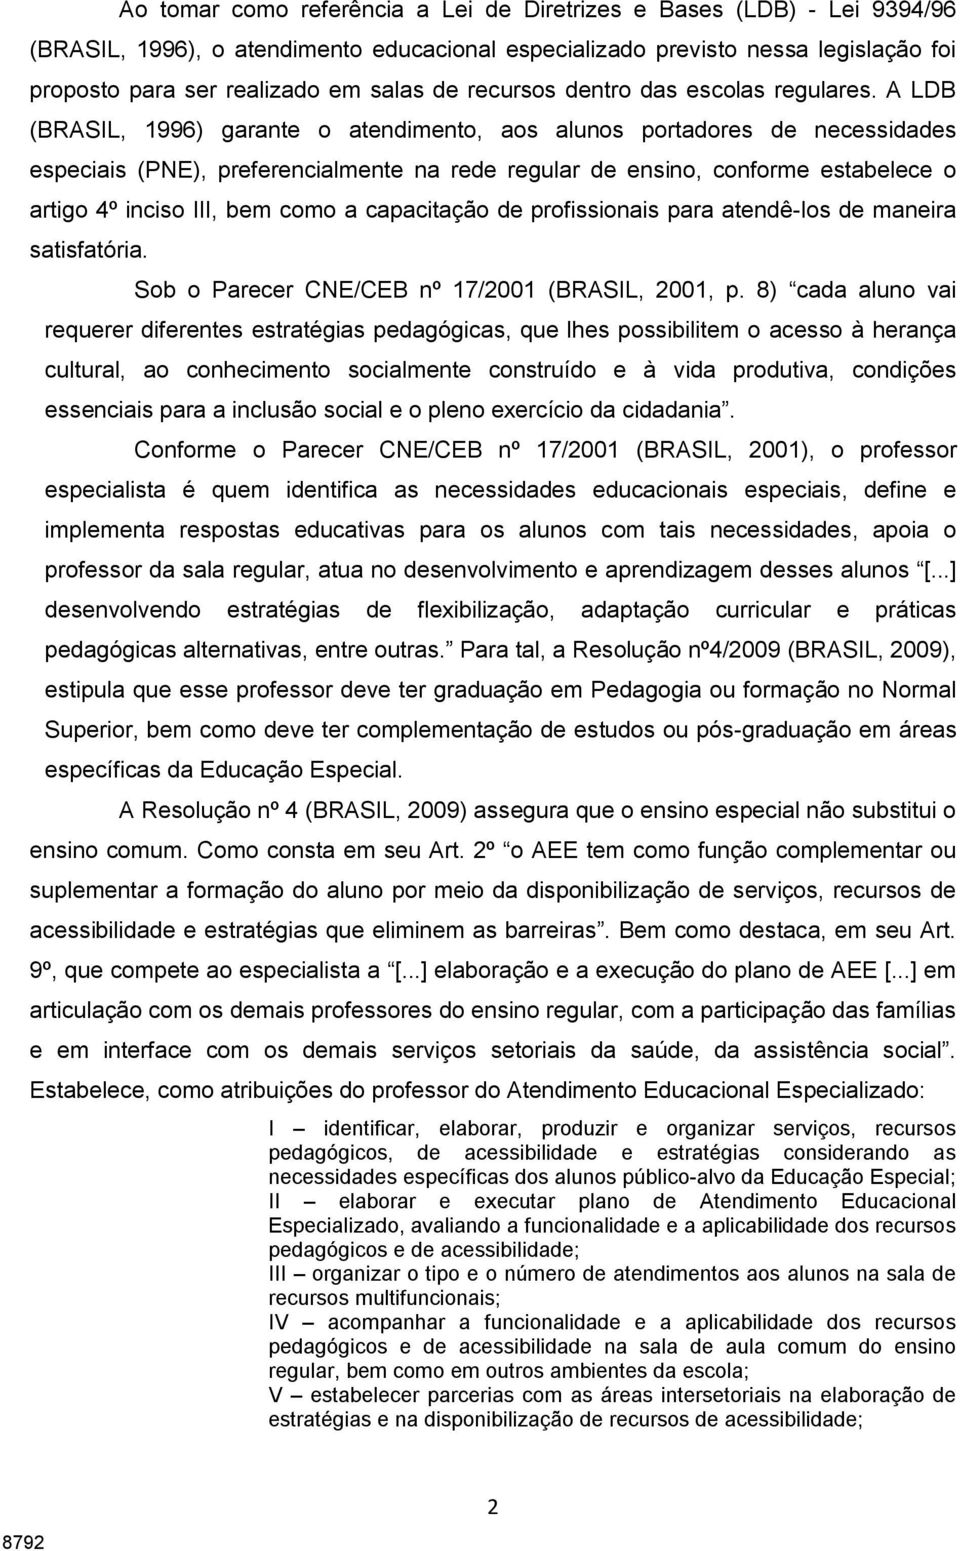 A LDB (BRASIL, 1996) garante o atendimento, aos alunos portadores de necessidades especiais (PNE), preferencialmente na rede regular de ensino, conforme estabelece o artigo 4º inciso III, bem como a